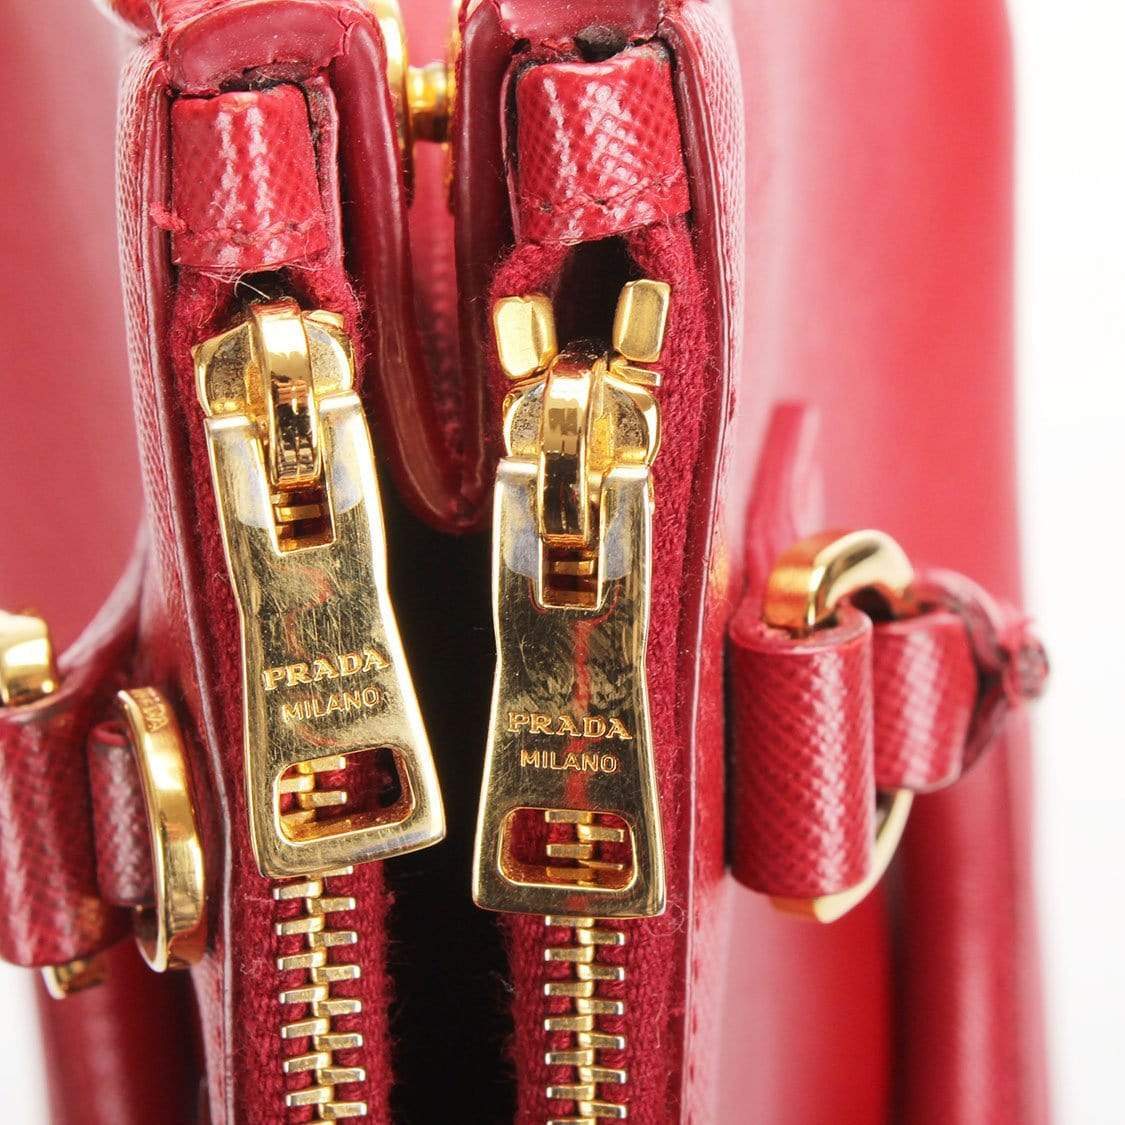 Prada Prada MIni Galleria Double Zip Handbag MW2857